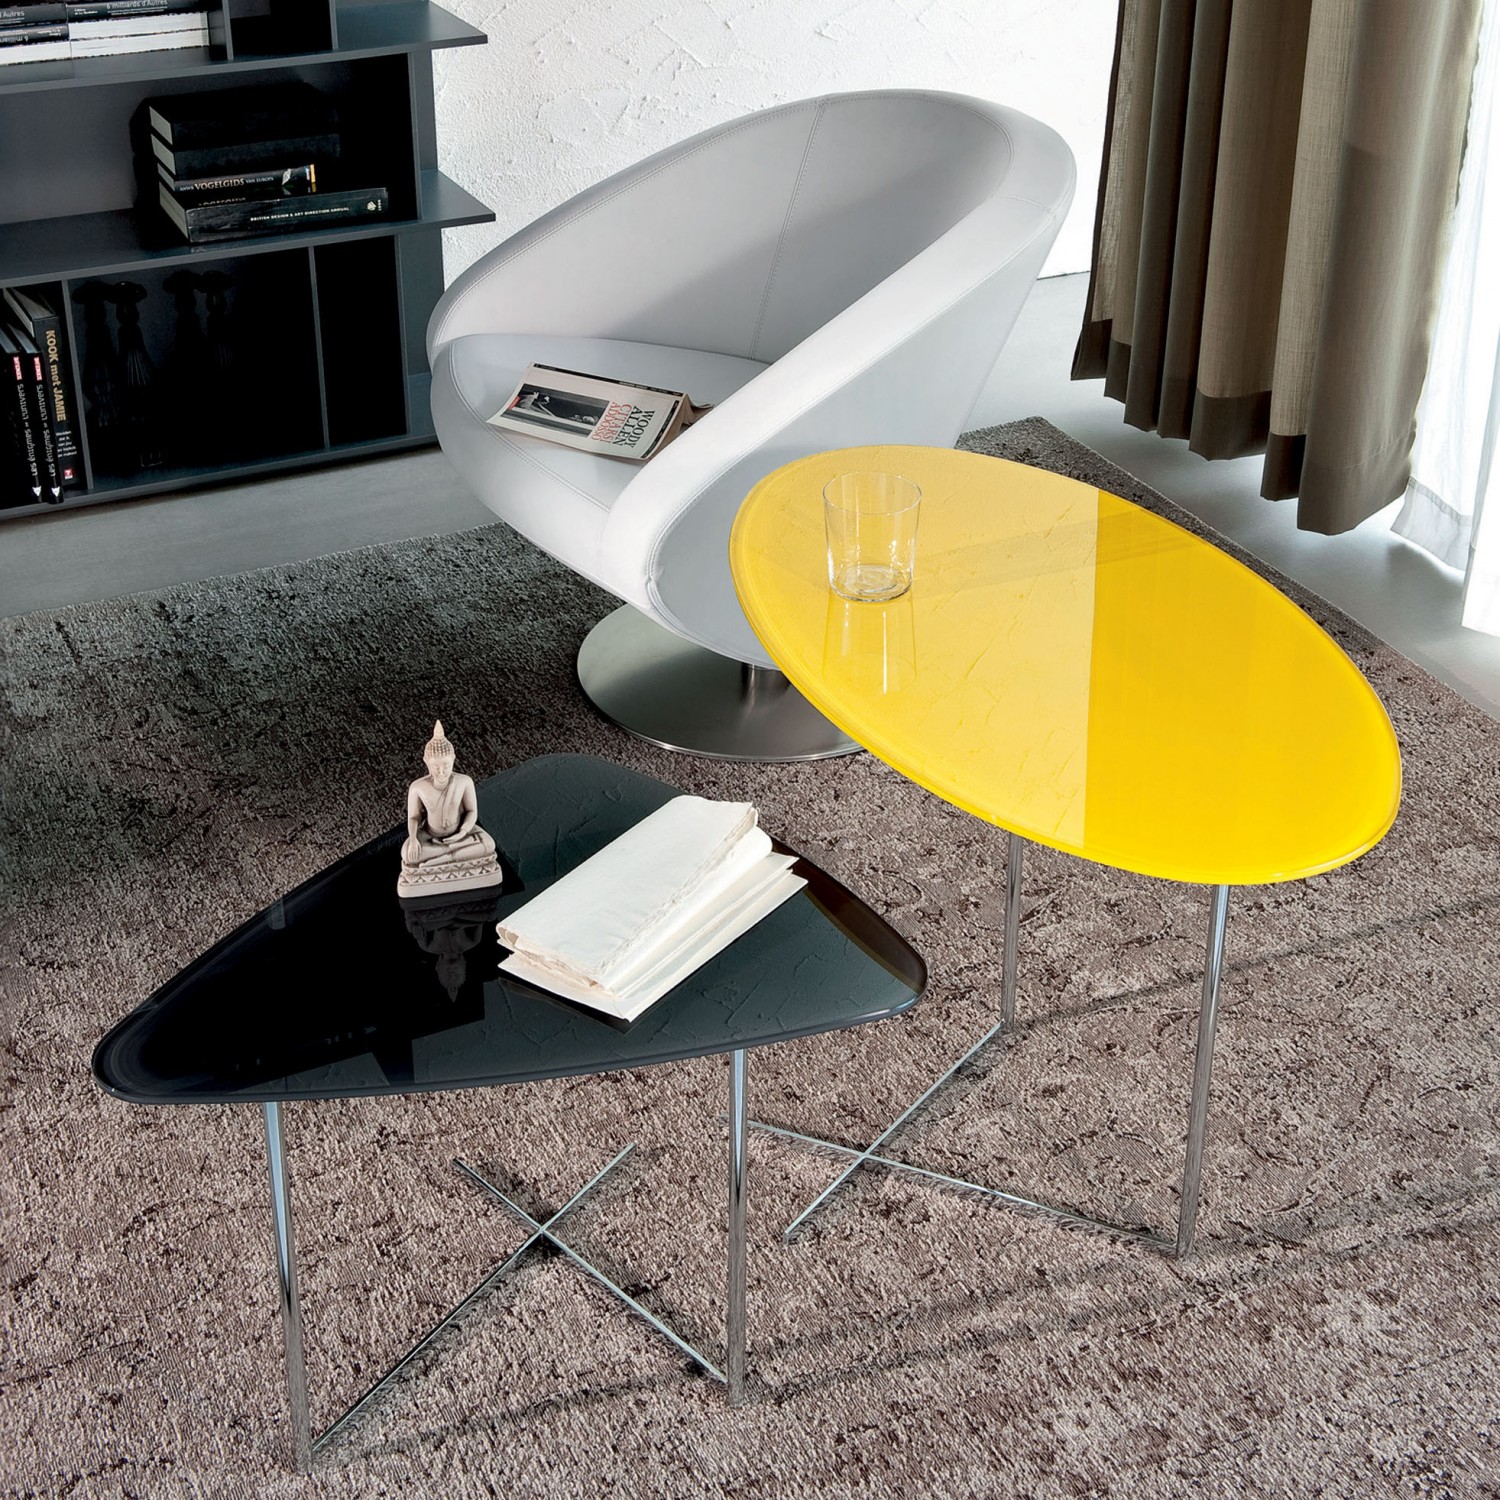 Vislone Tavolino da caffè/Tavolino Laterale da Salotto Rotondo Design Moderno in Vetro Bianco/Nero a Goccia 42 x55 cm 